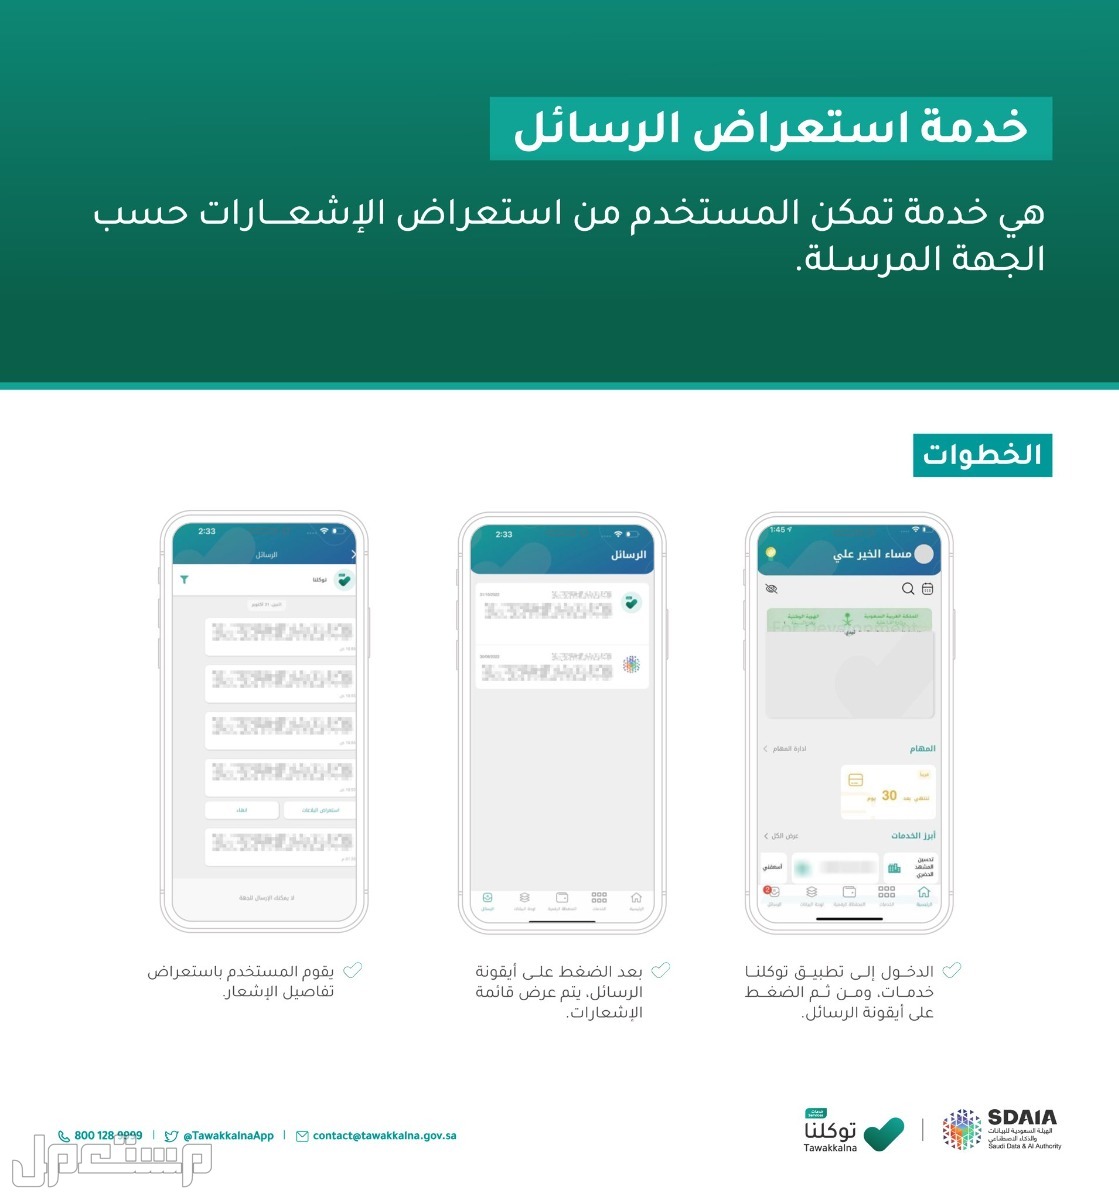 خطوات استعراض إعدادات الحساب في توكلنا خدمات في الكويت